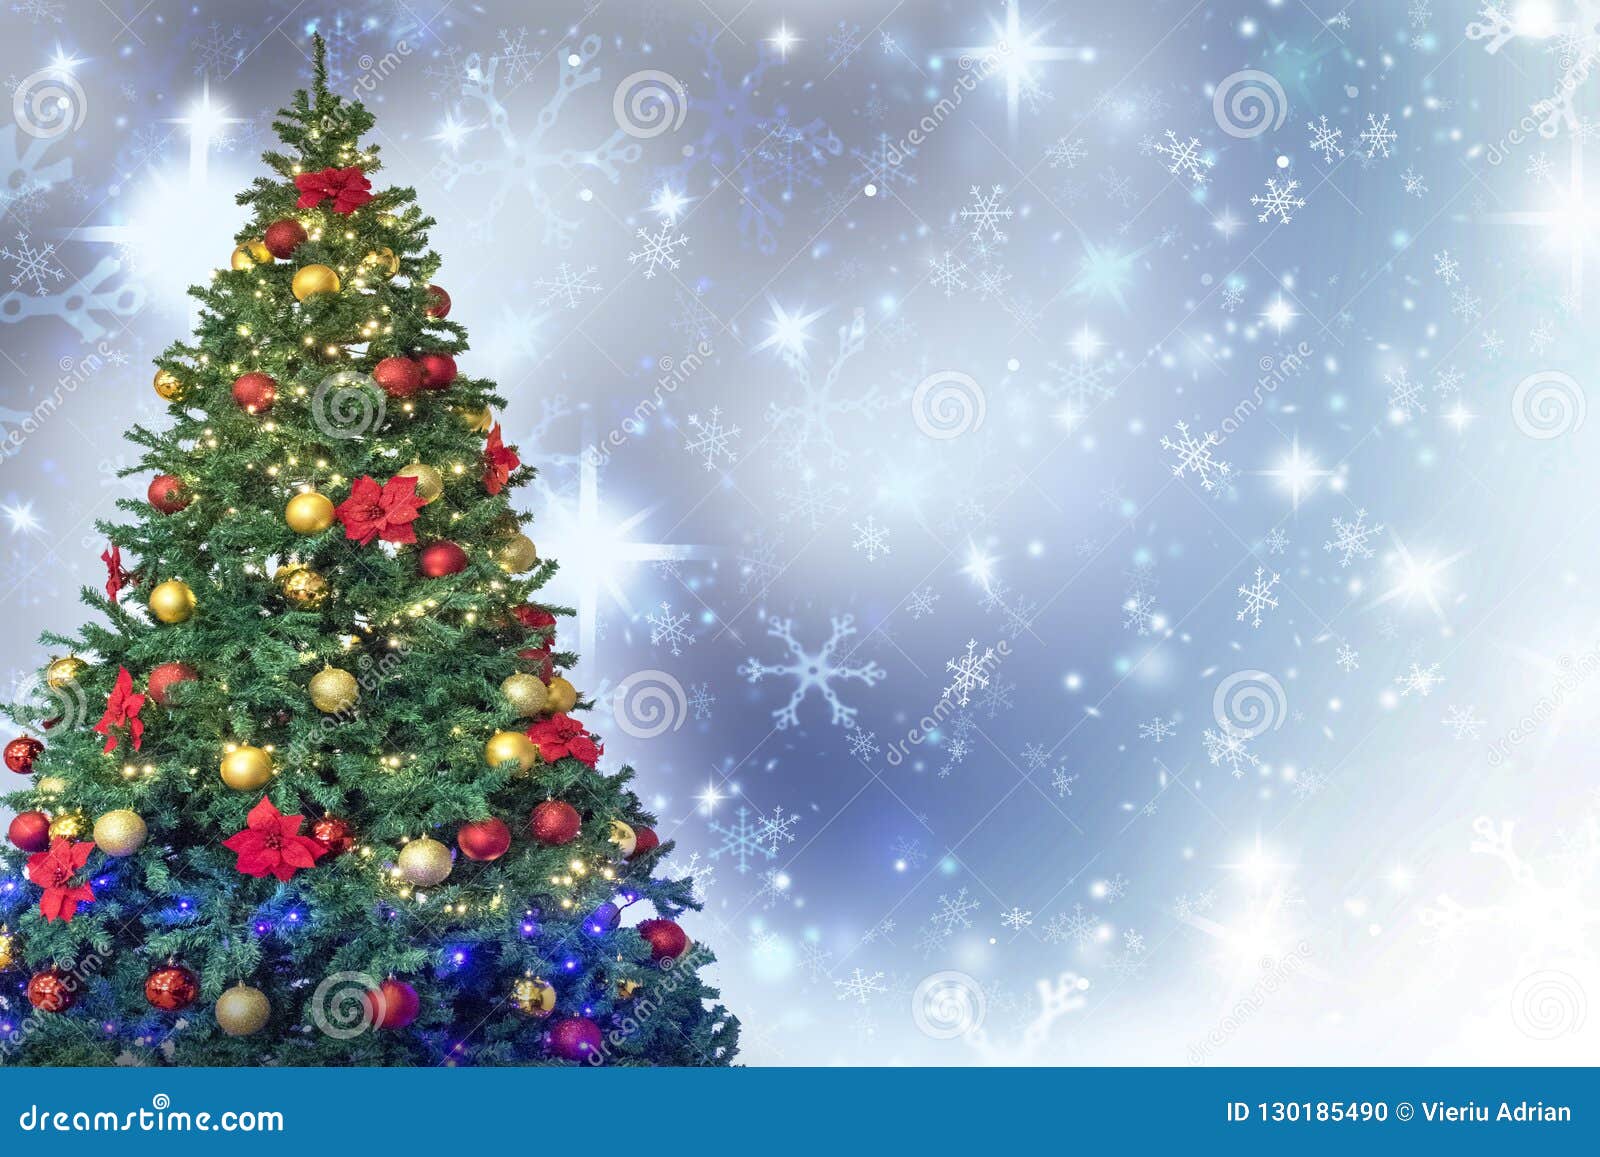 Để tạo không khí Giáng sinh ấm áp, bạn đừng bỏ lỡ hình ảnh trang trí cây thông đón Giáng Sinh! Những đèn nhấp nháy, những trang trí nhỏ xinh, tất cả tạo nên một bức tranh đẹp và lung linh.